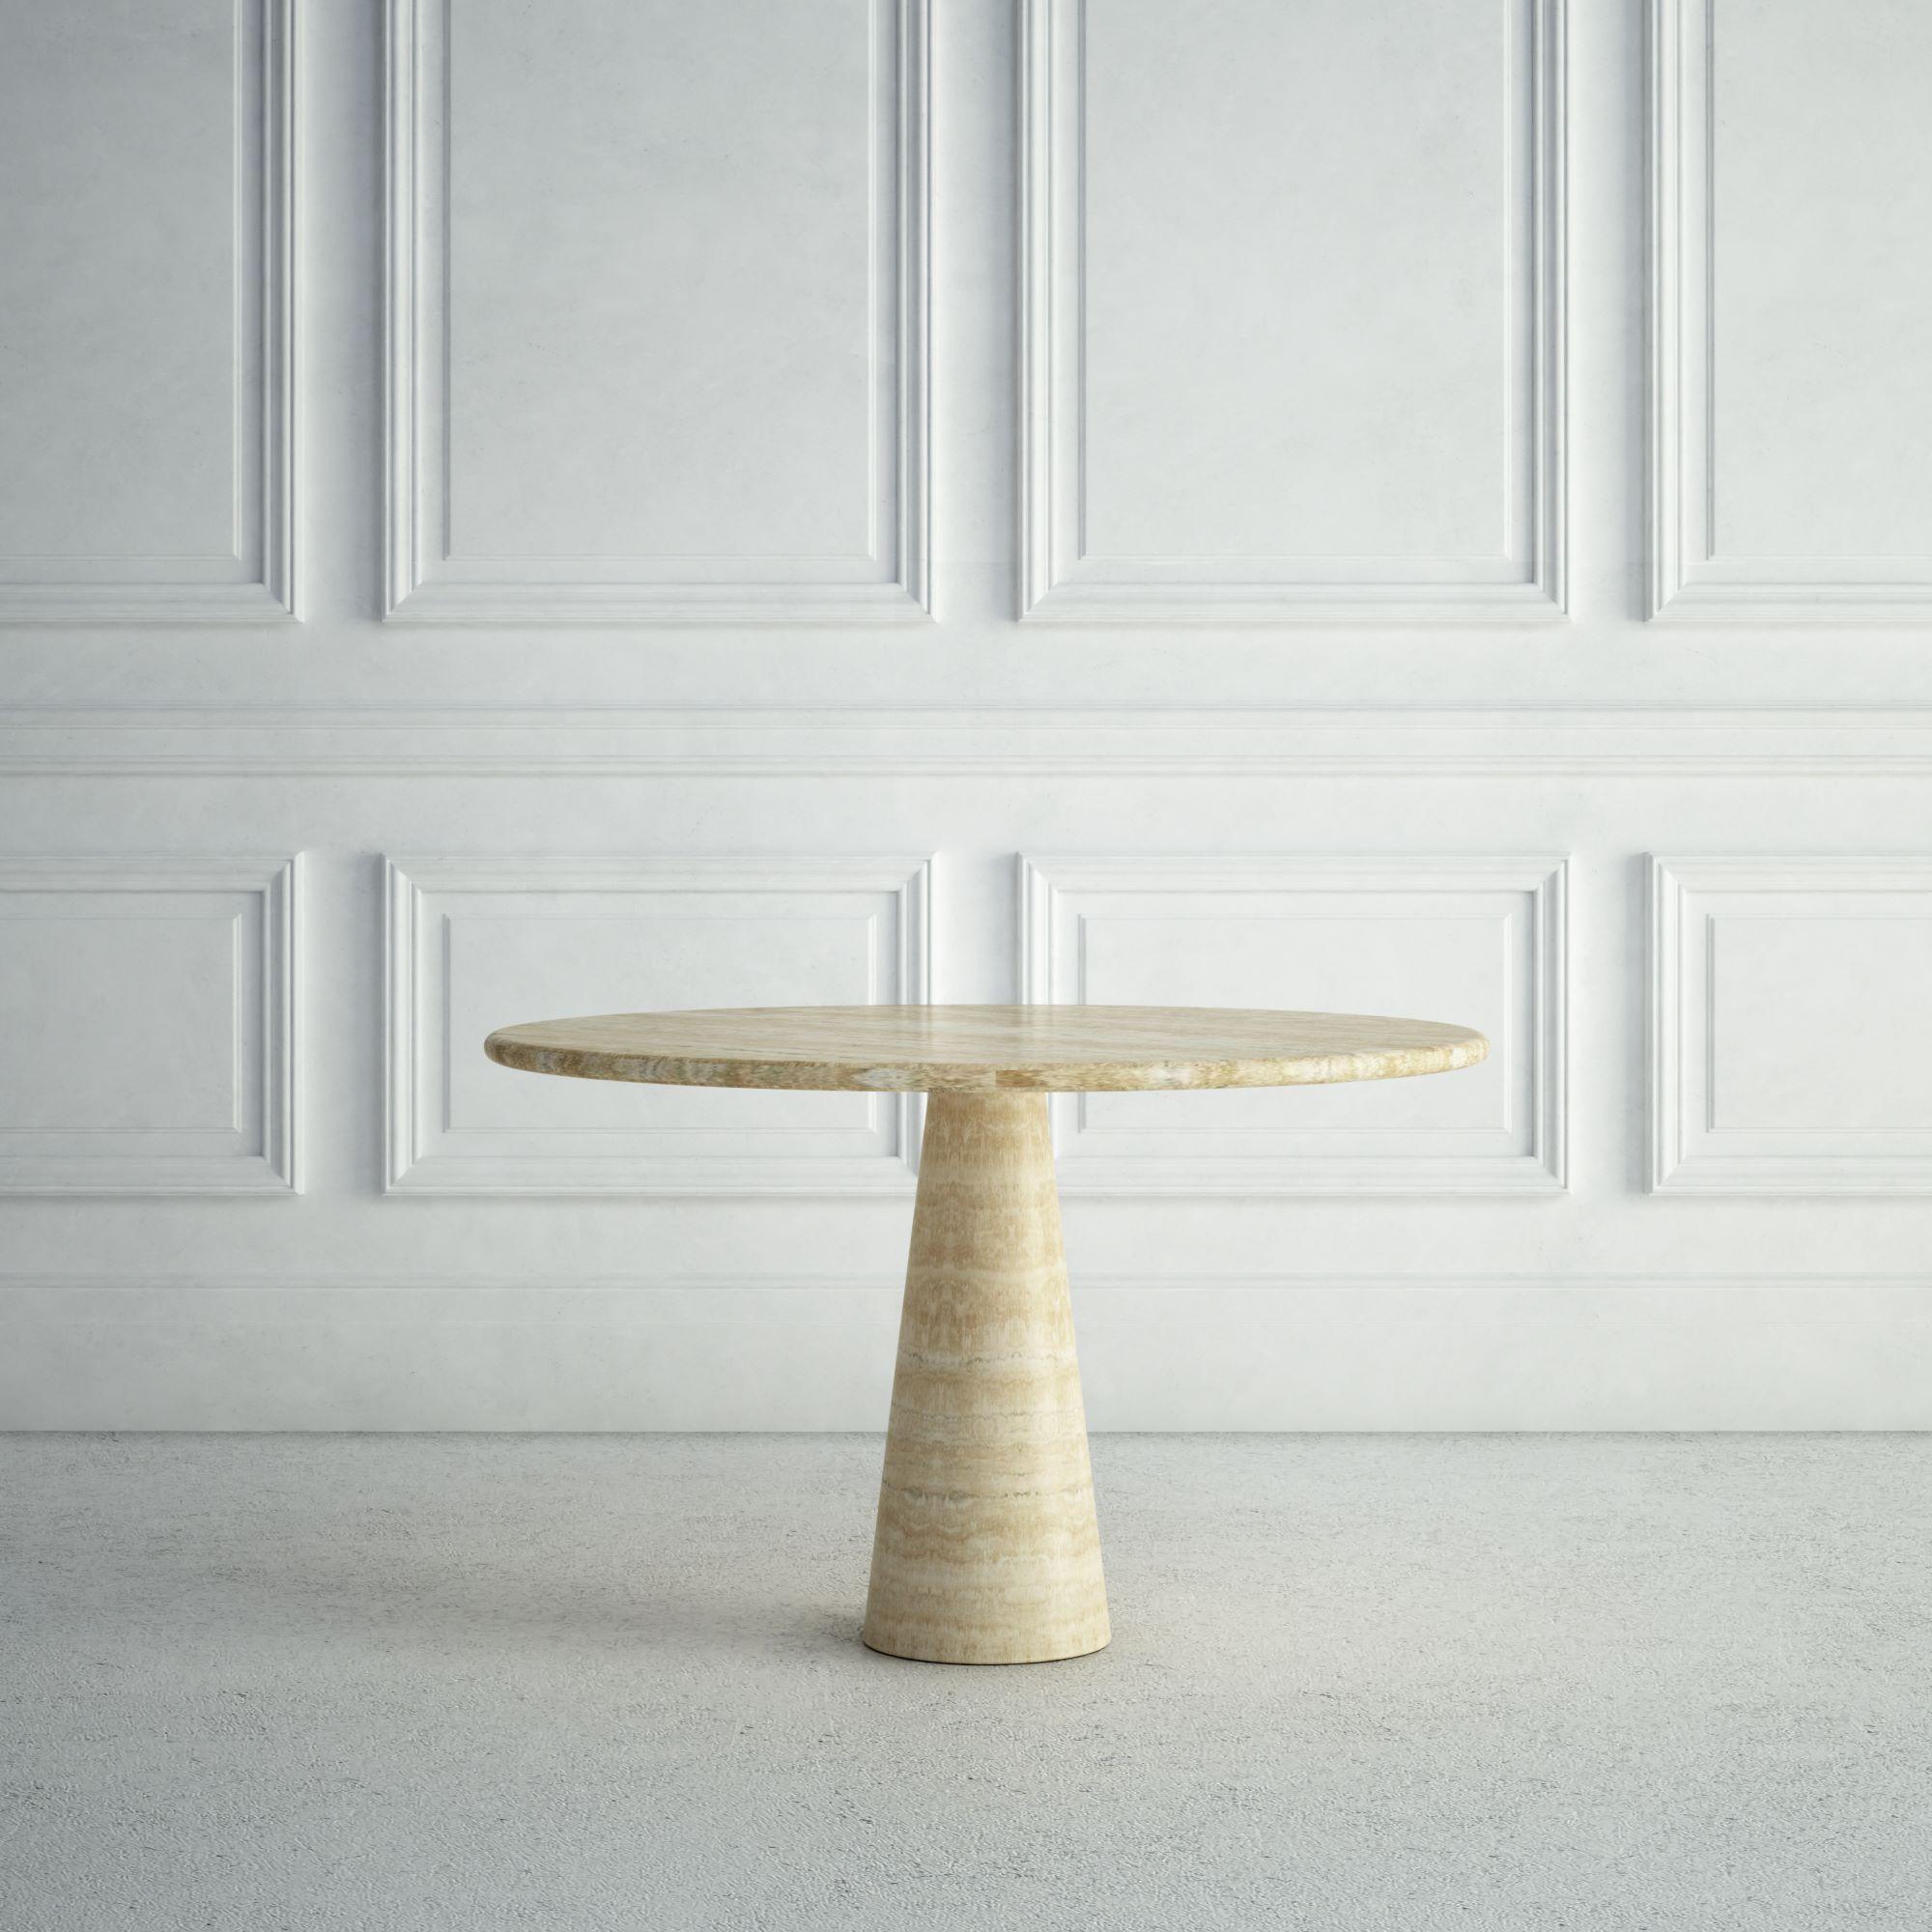 La Margaux est une petite table de salle à manger moderne en pierre, avec un plateau rond et un bord en arrondi.  La base est également arrondie, mais elle s'affine en montant, formant une forme conique ludique.  Tous ces éléments lui confèrent un